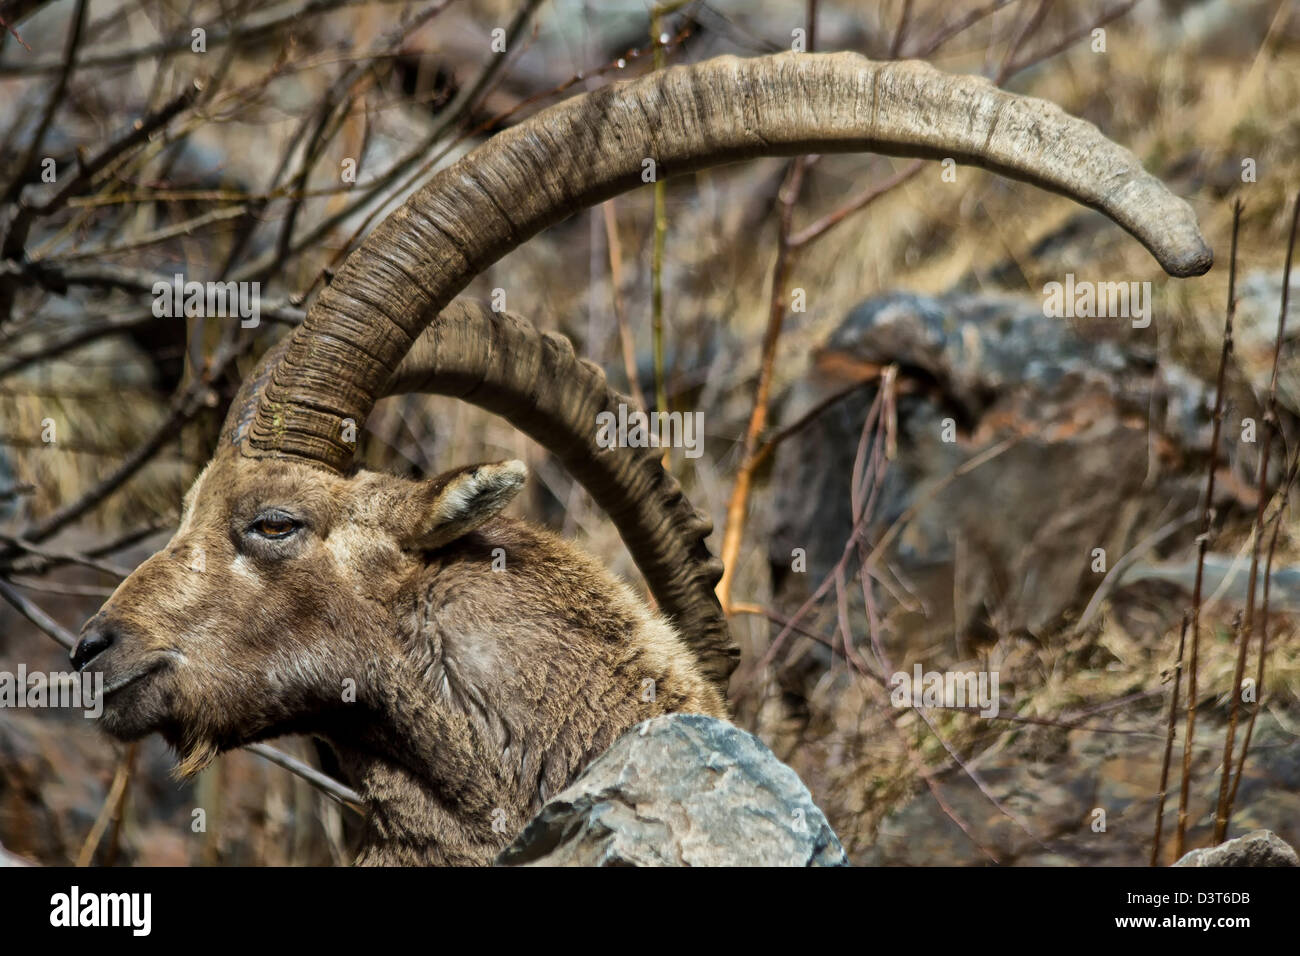 Alpine ibex (Capra ibex), steinbock, Mountain,  Italian Alps, Val Bondione, Italy Stock Photo